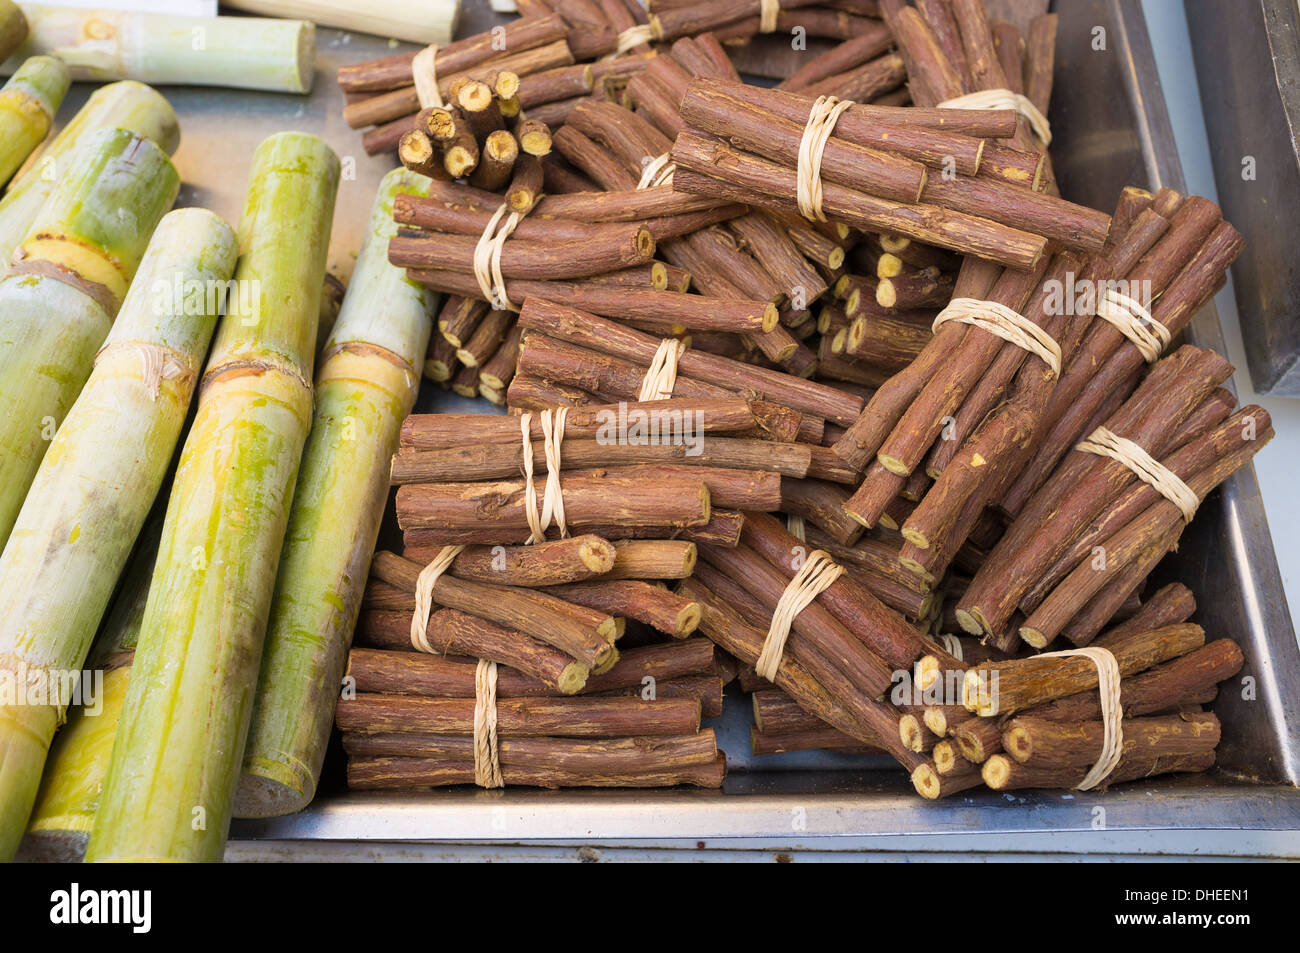 Fornito in bundle di radice di liquirizia e di canna da zucchero sul display in un mercato in stallo Foto Stock